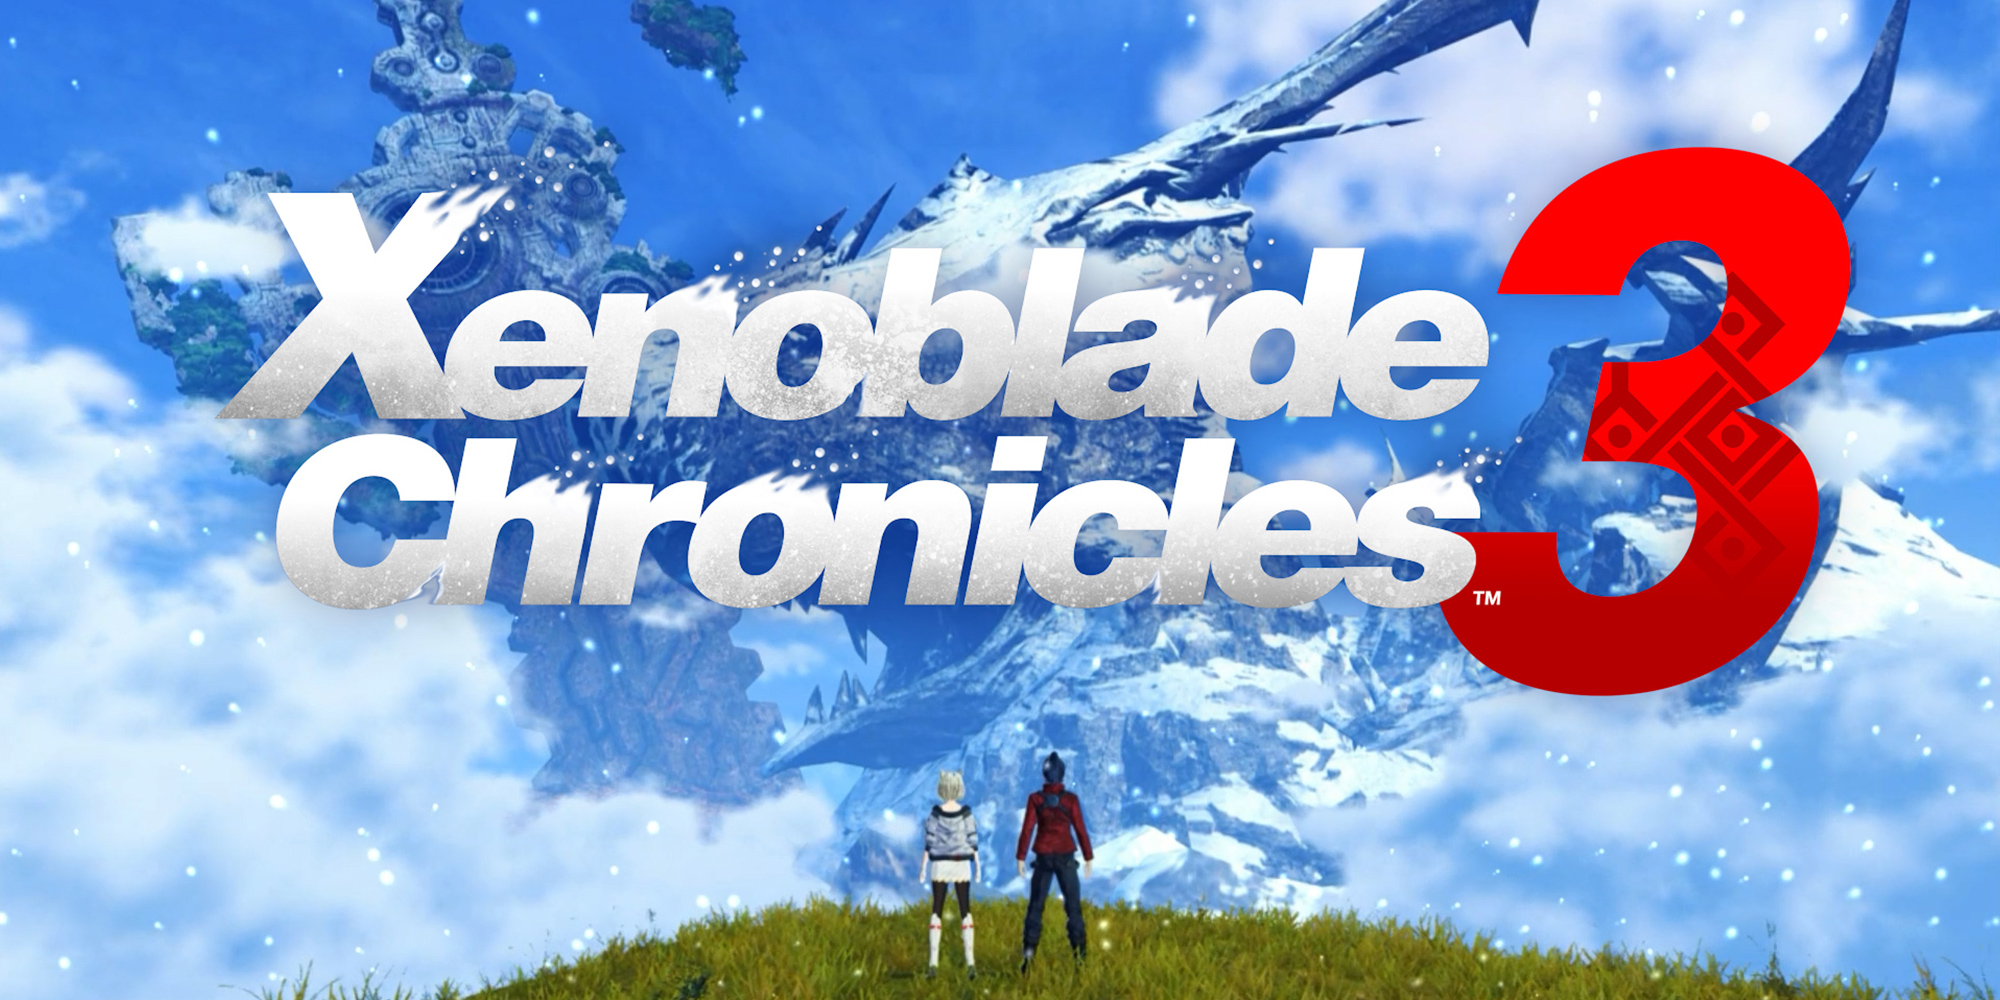 Registra il tuo interesse per la Collector's Edition di Xenoblade Chronicles 3!